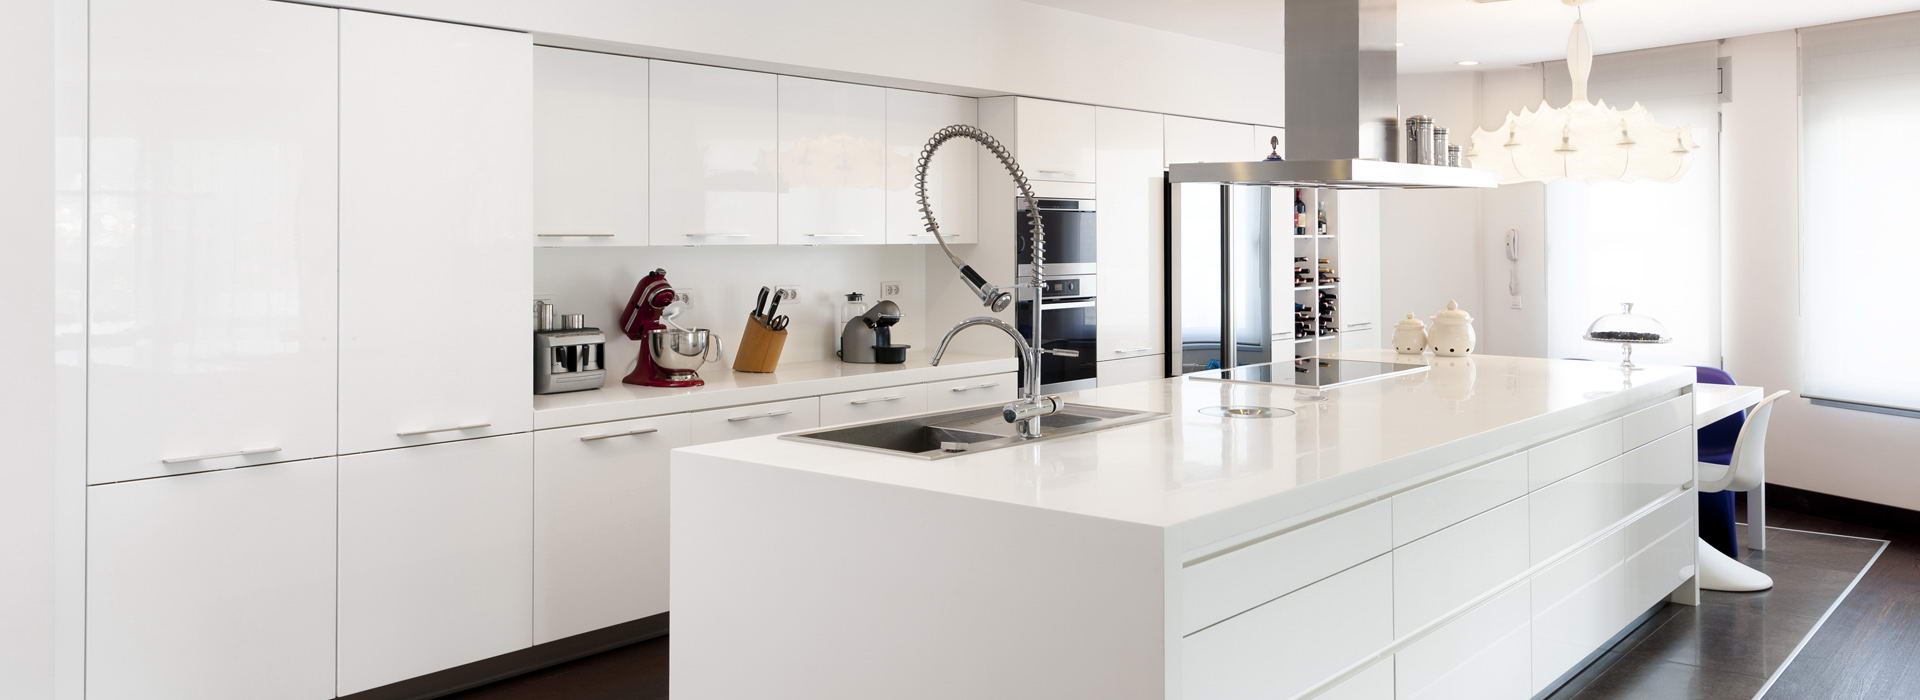 Design de cuisine intégré, cuisine moderne en acrylique blanc lustré et comptoirs quartz.